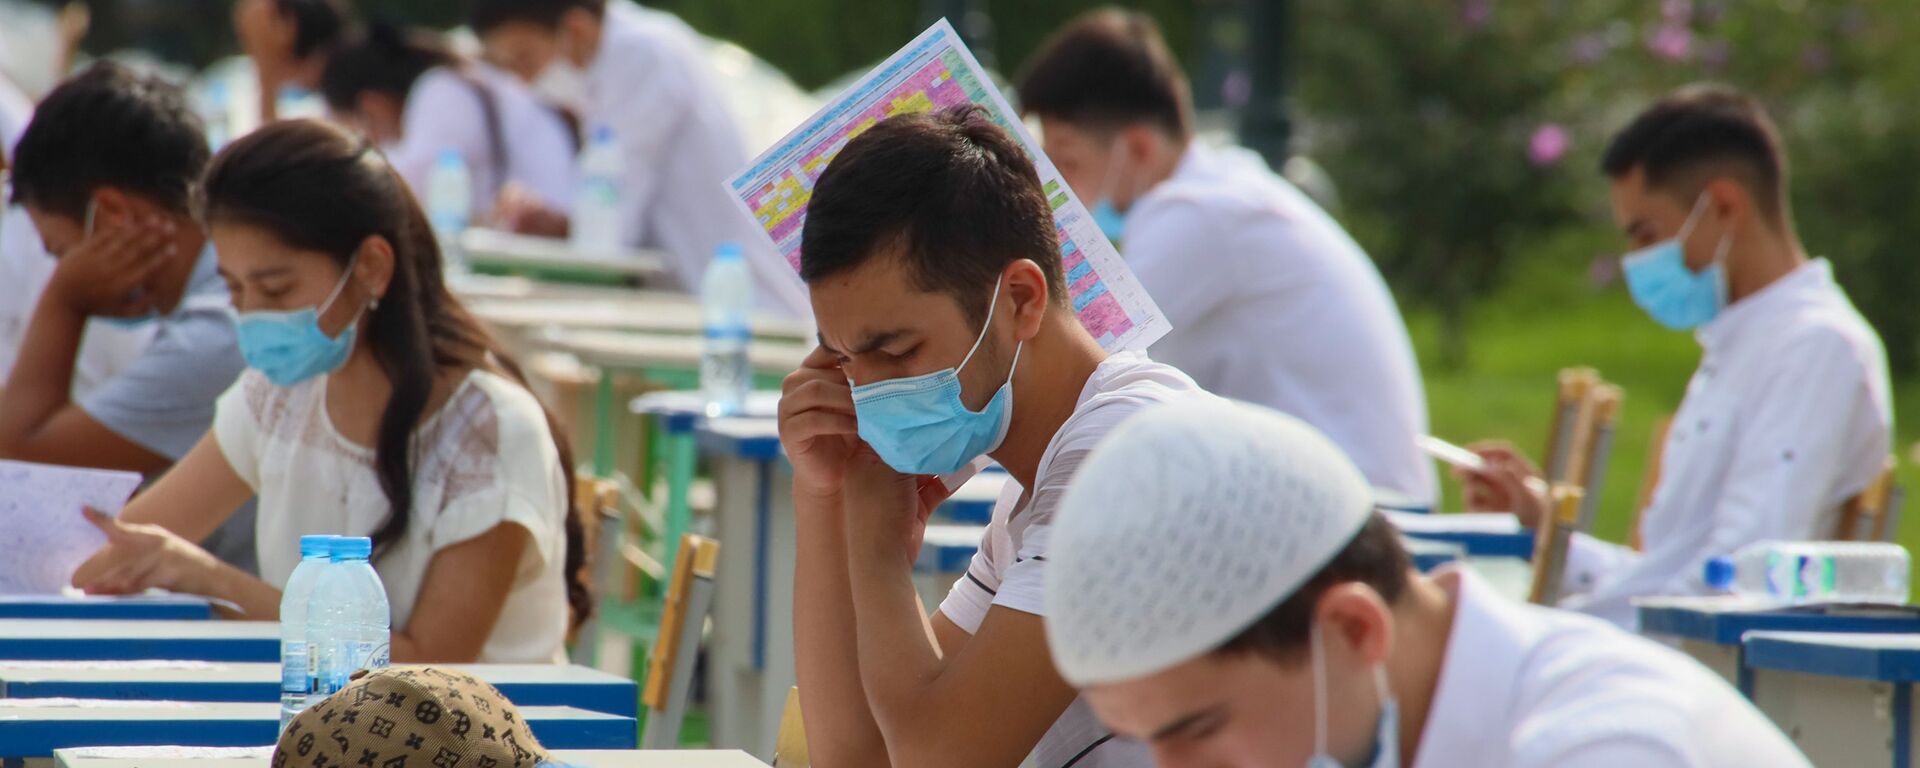 Узбекские студенты сдают вступительные экзамены под открытым небом в Ташкенте - Sputnik Ўзбекистон, 1920, 02.11.2021